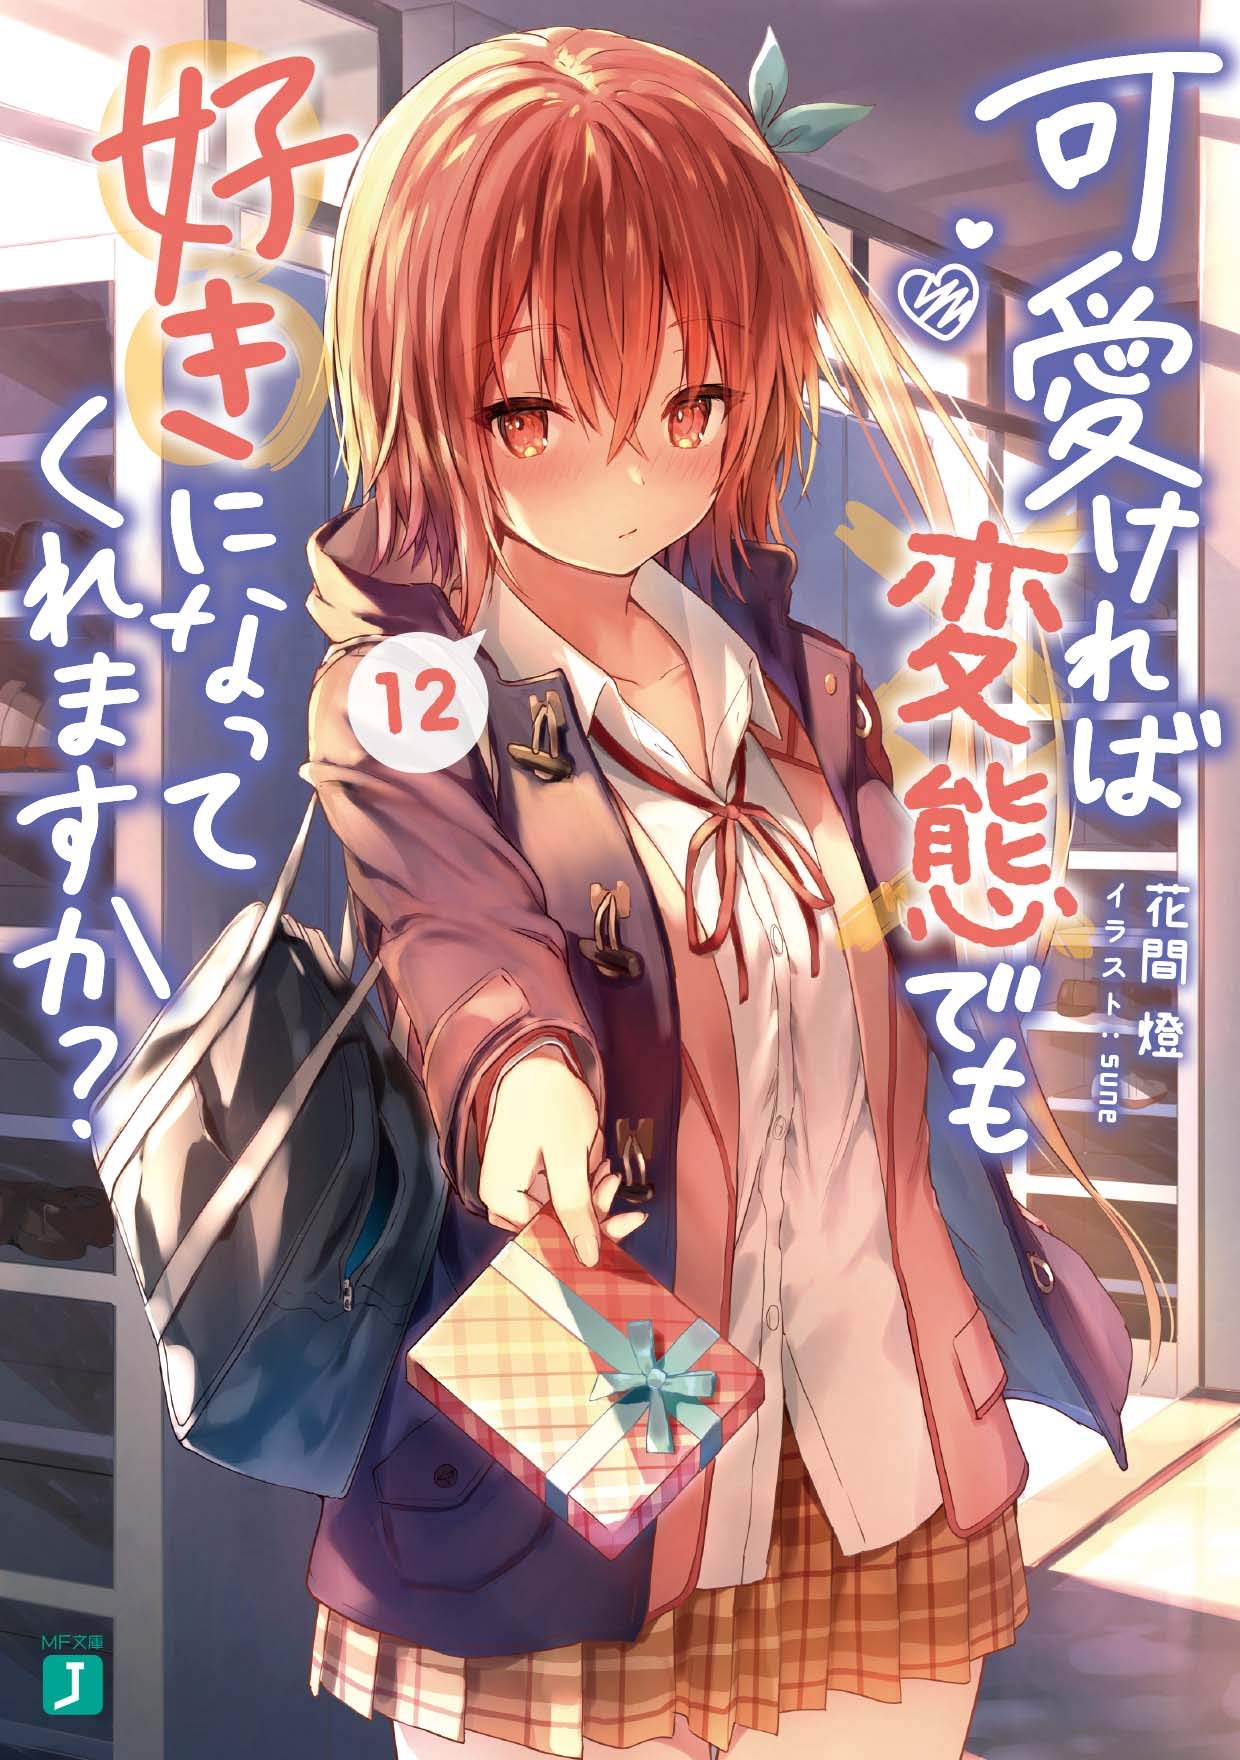 Light Novel Volume 6  Anime, Anime images, Romantic anime